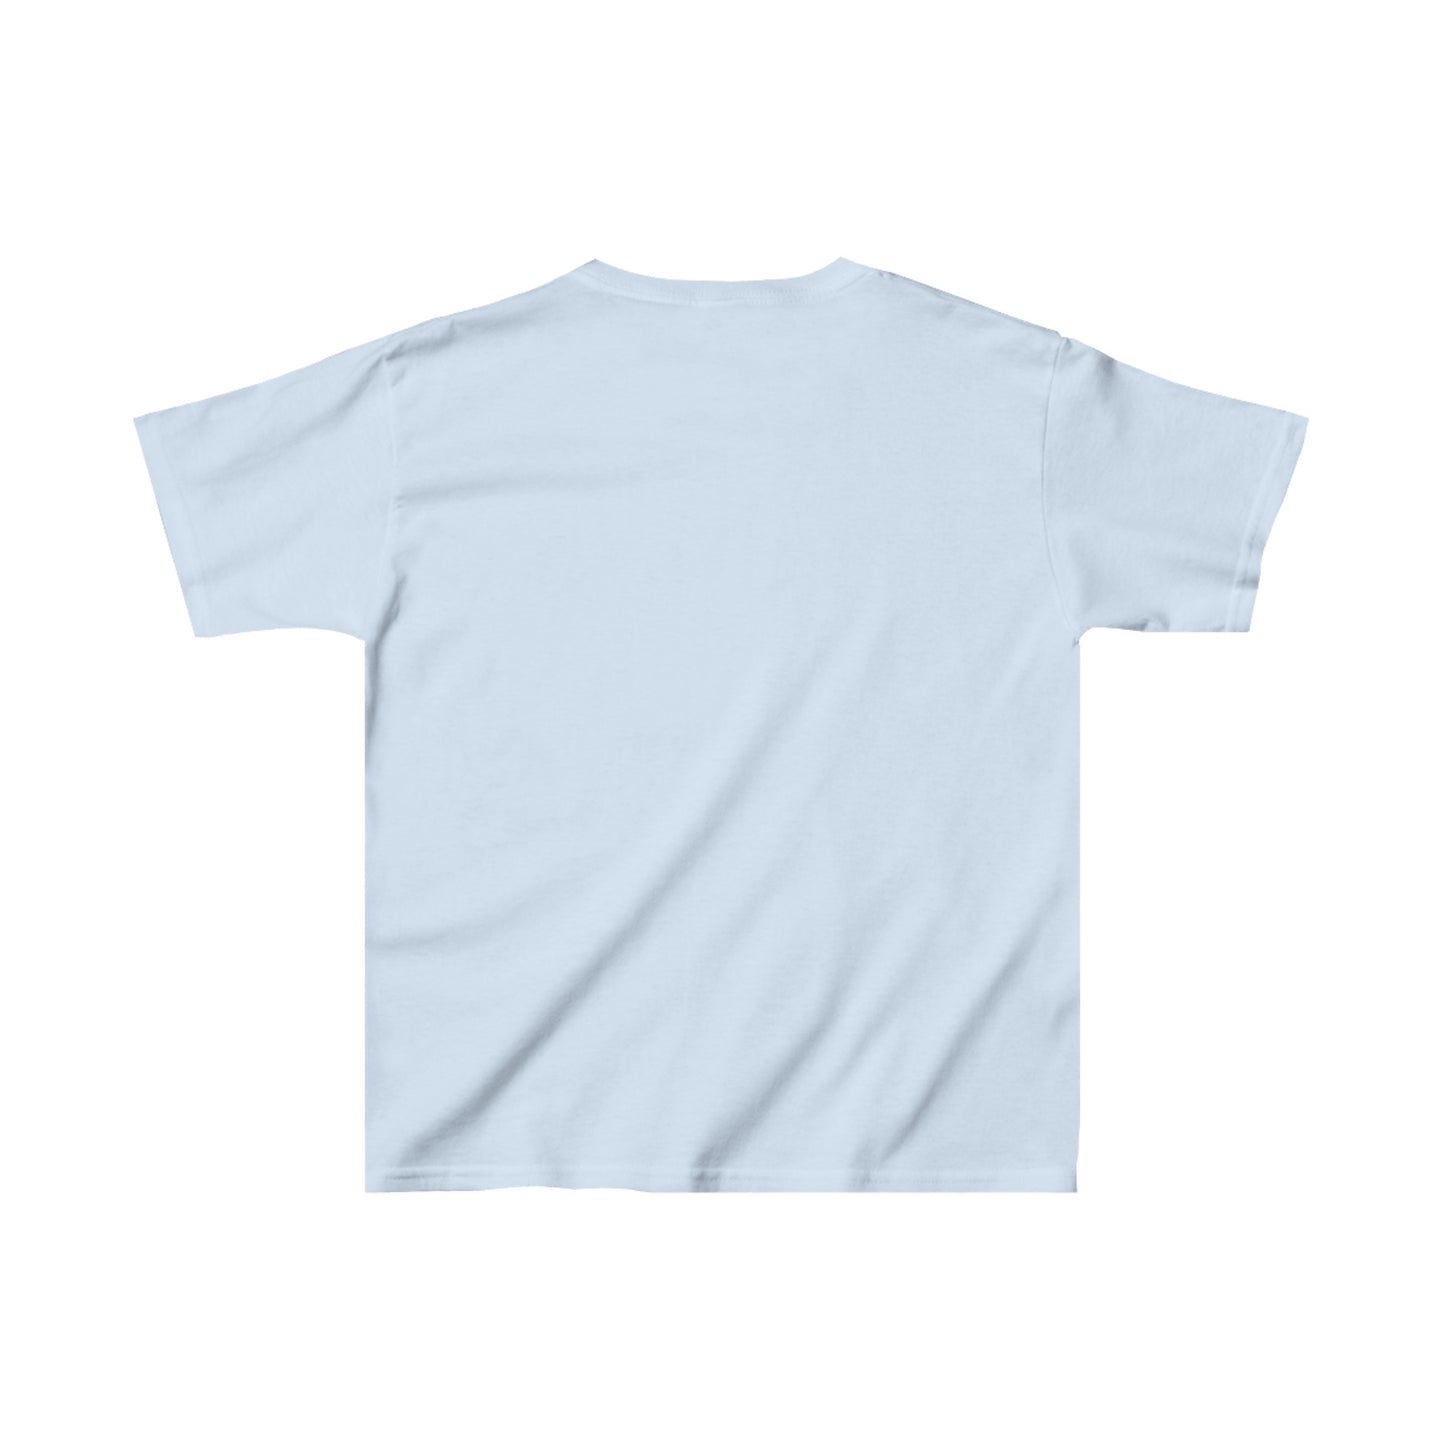 Kobe Bryant Youth T-Shirt